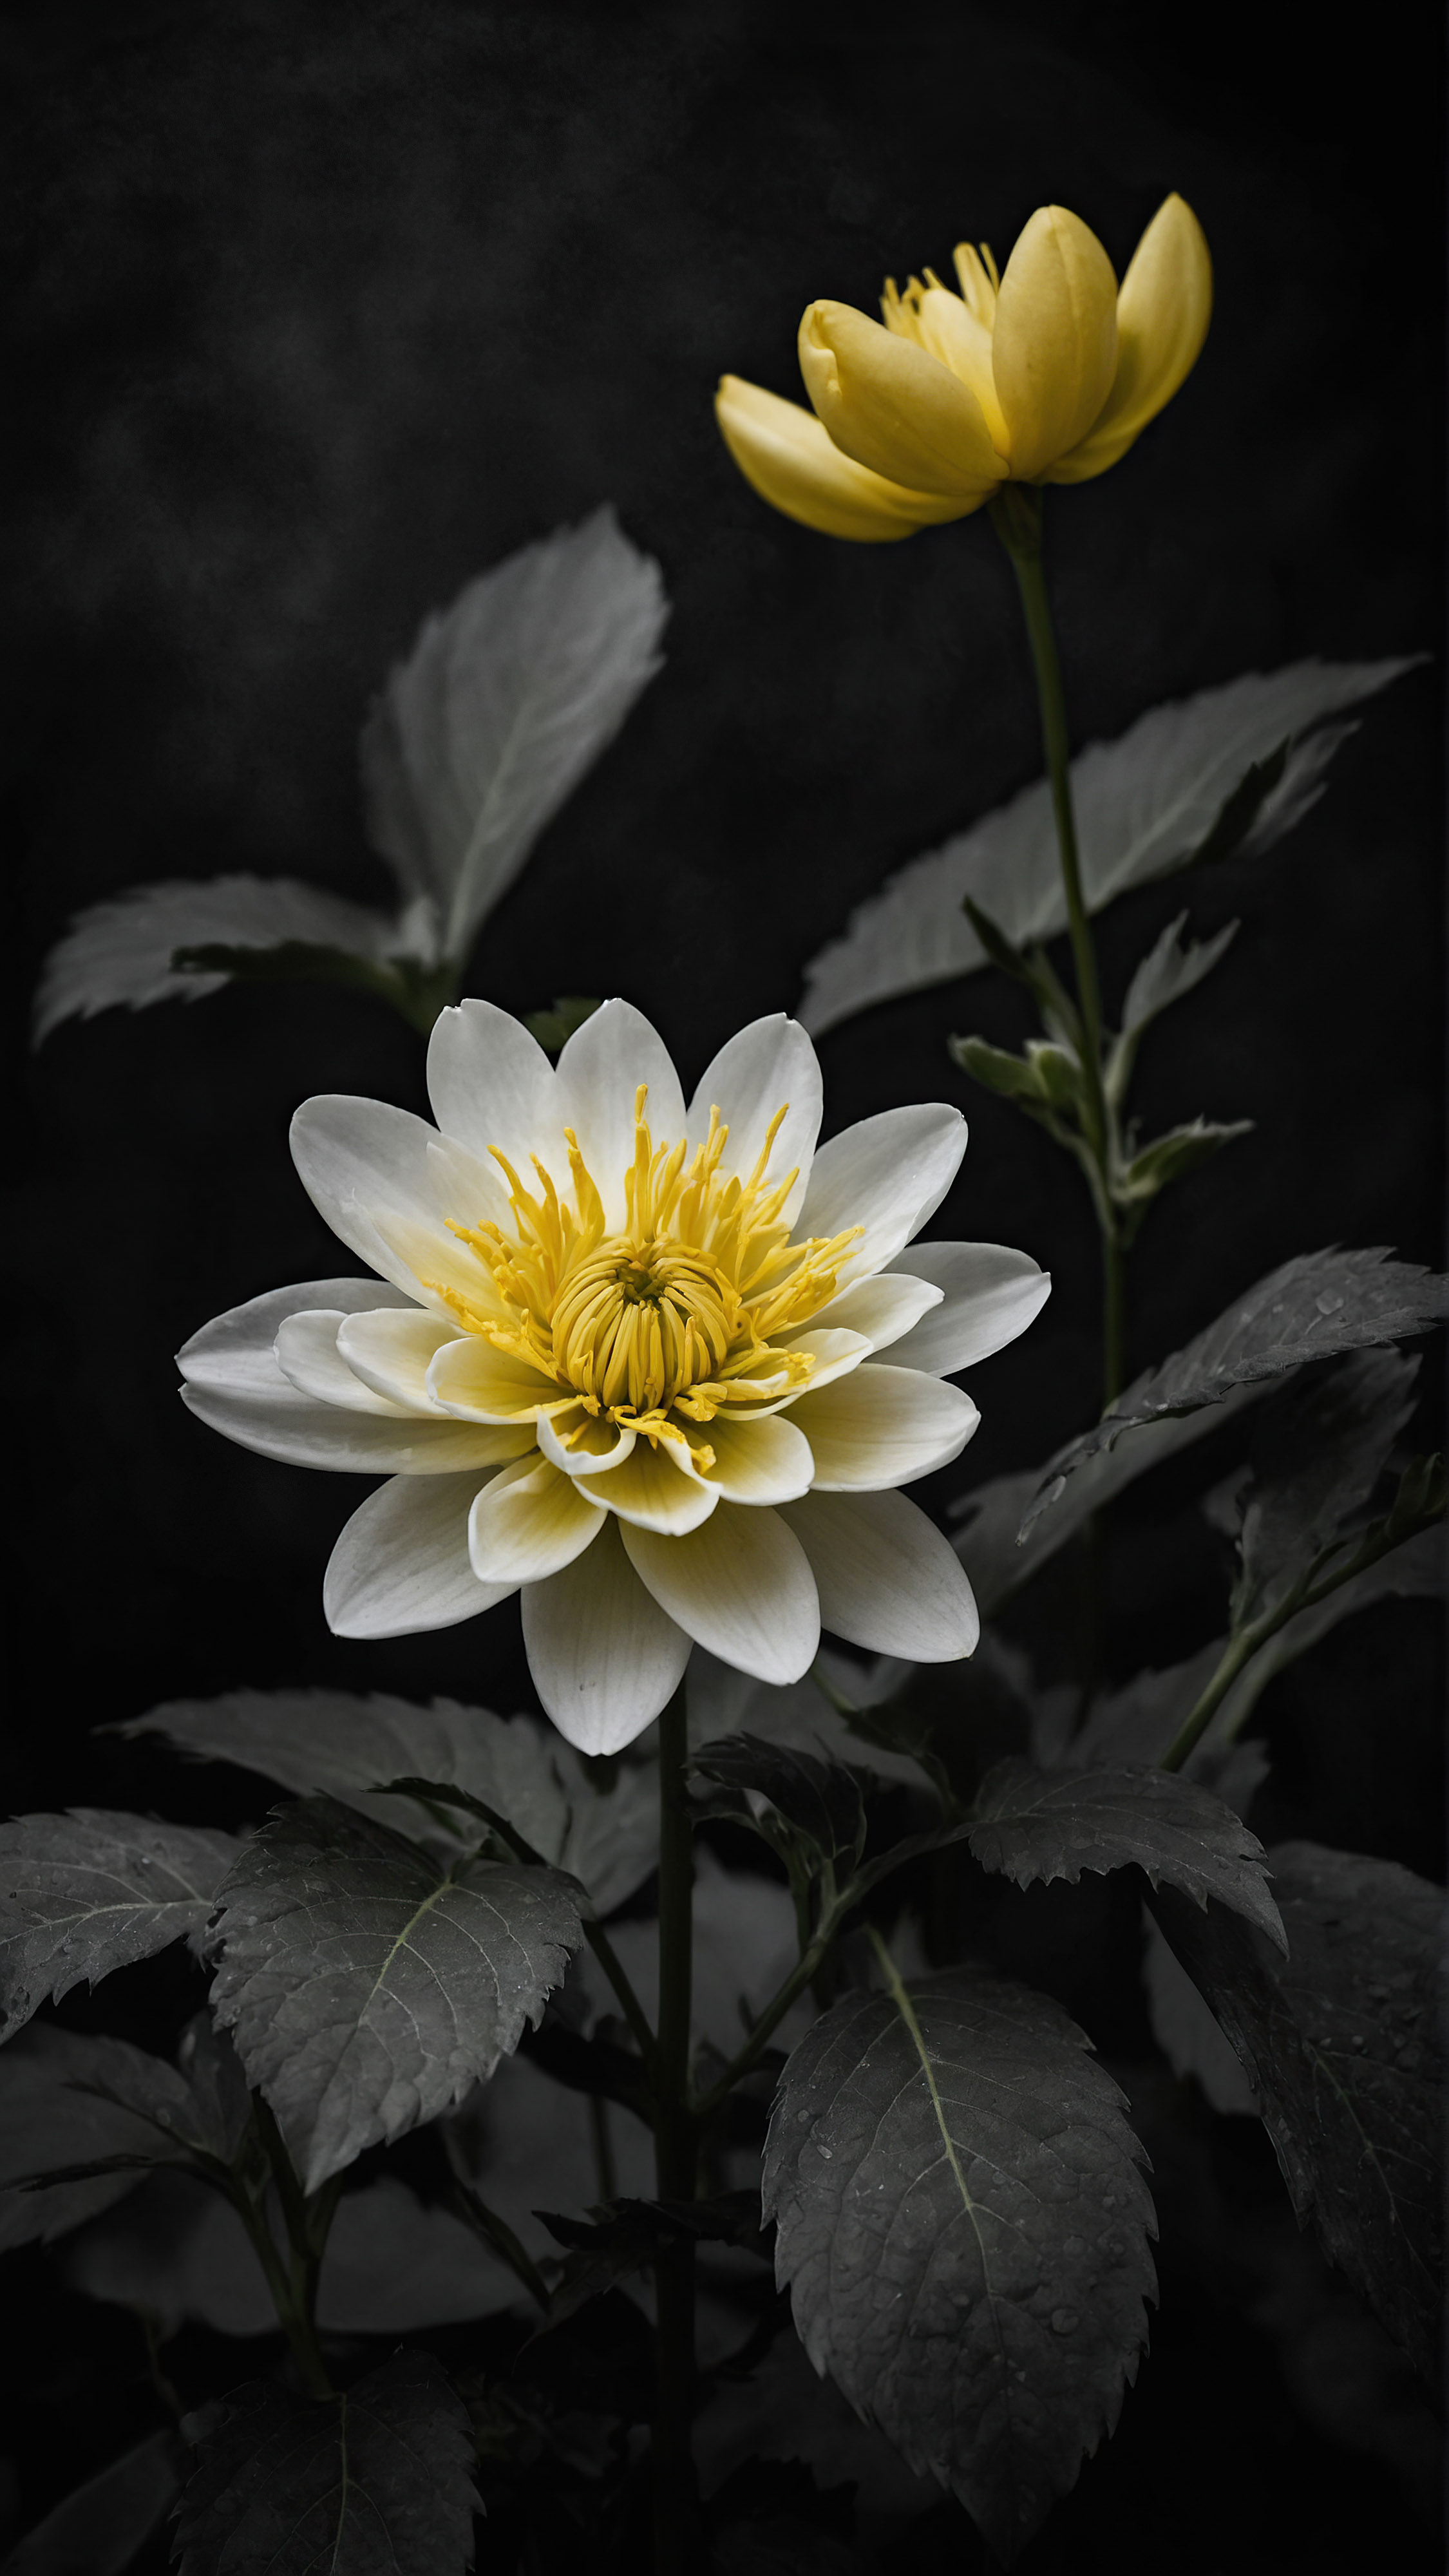 Admirez la beauté délicate avec un fond d'écran noir mignon pour iPhone, mettant en valeur une fleur en fleurs aux pétales délicats jaunes et blancs, magnifiquement détaillés sur un fond sombre.